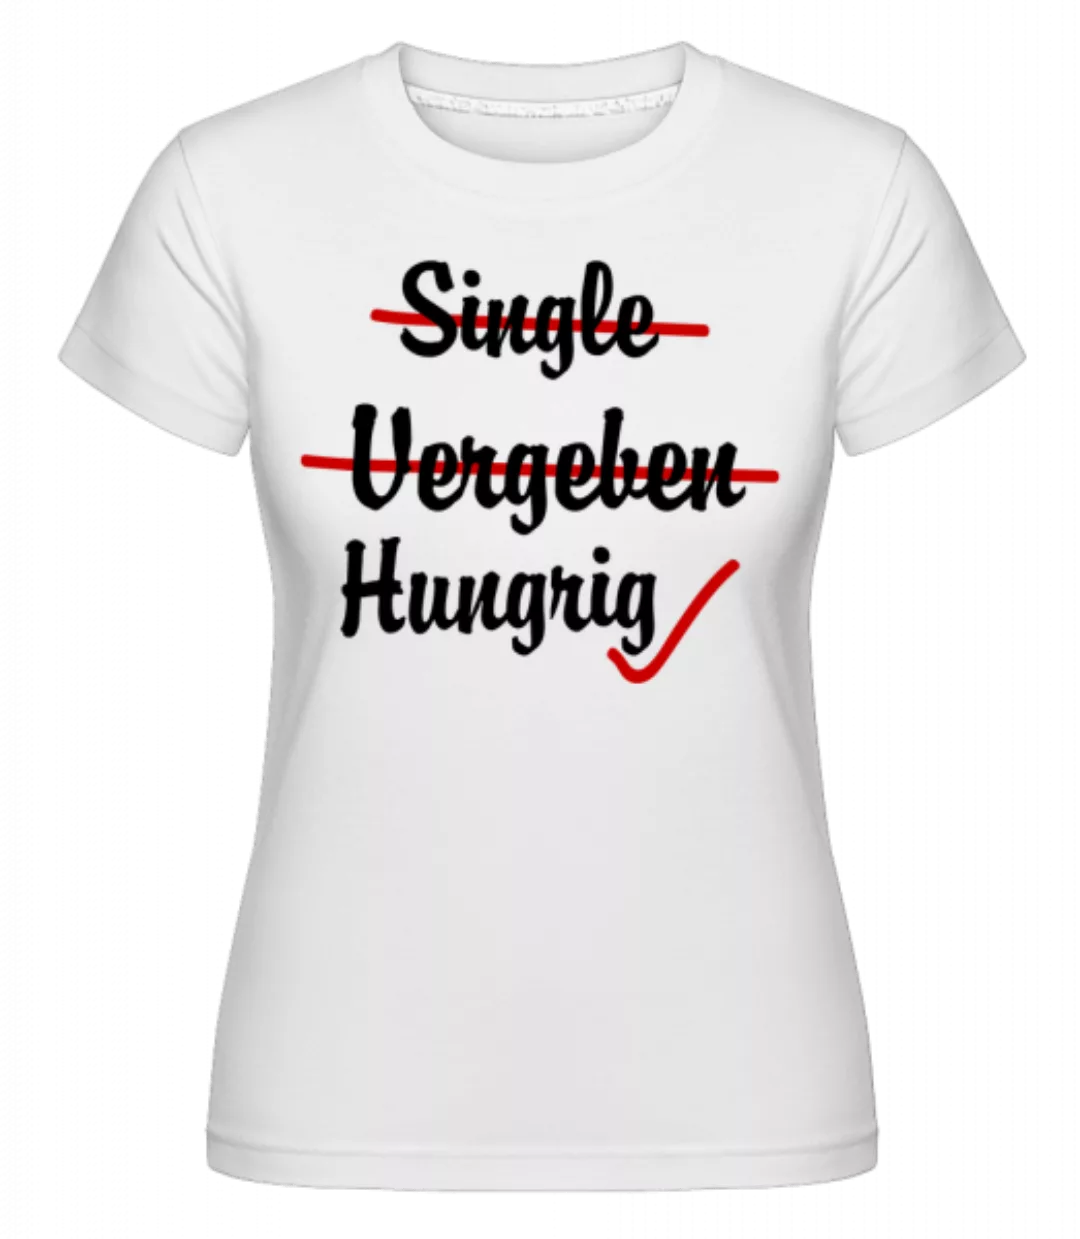 Single Vergeben Hungrig · Shirtinator Frauen T-Shirt günstig online kaufen